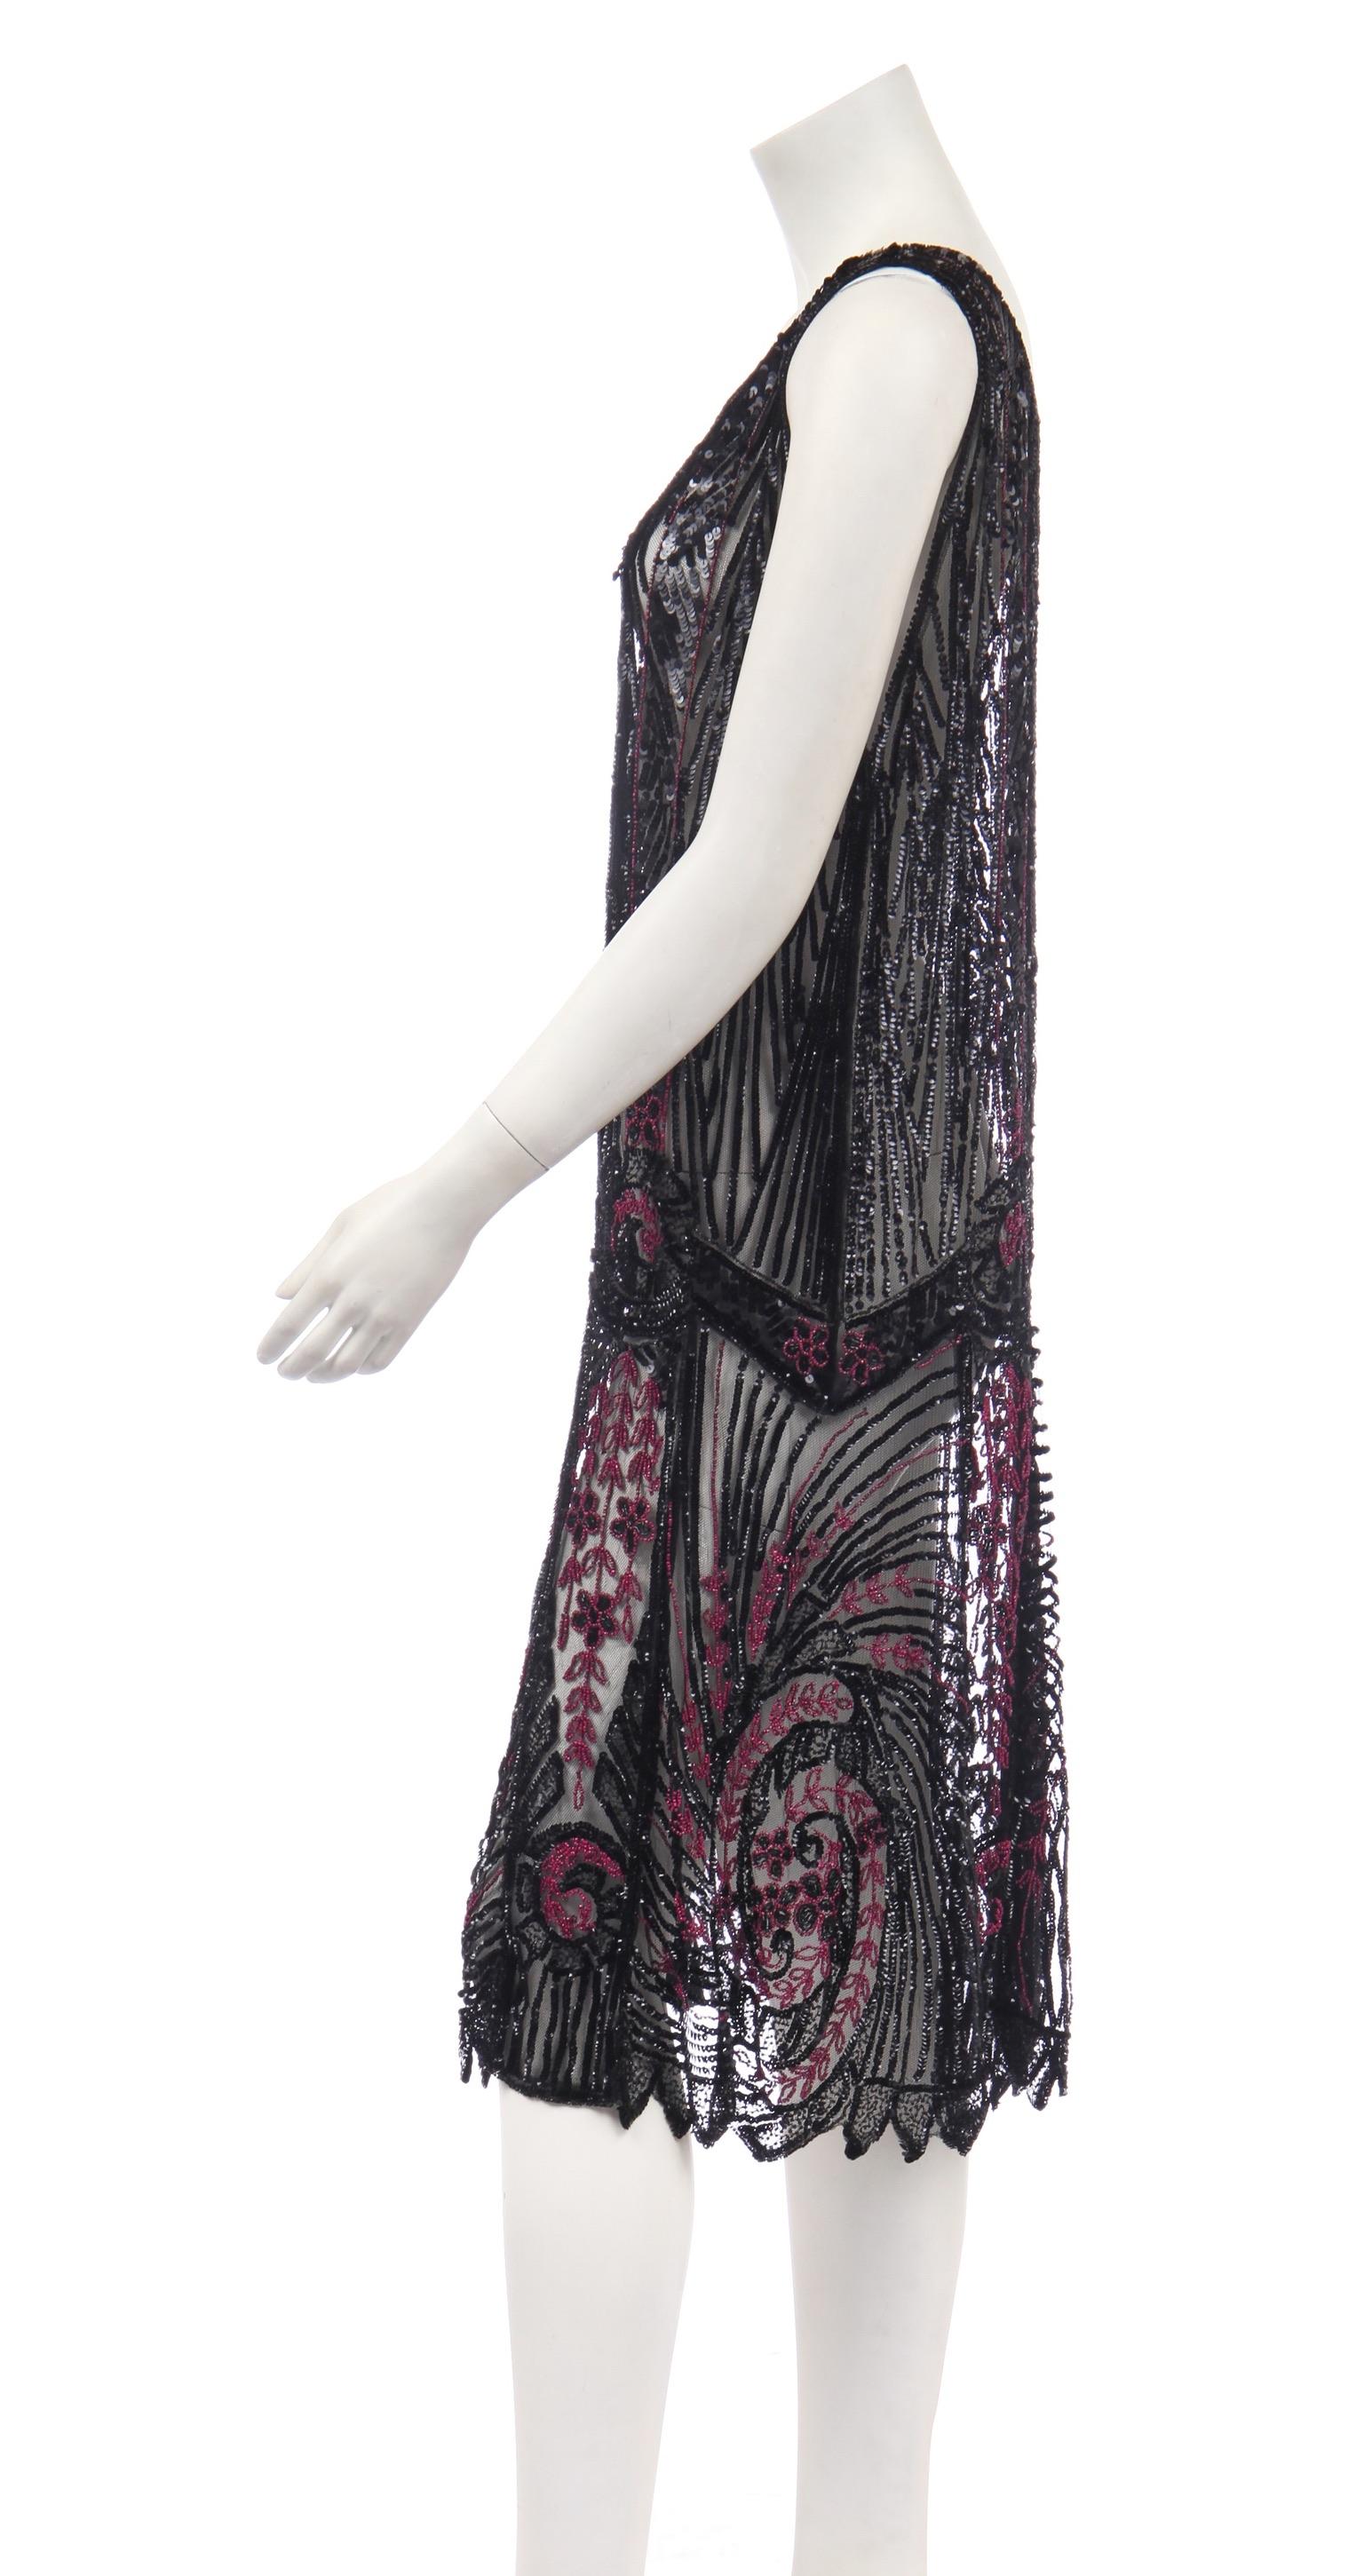 - 1920er Jahre Perlenflapper-Kleid
- Schwarzer Tule verschönert mit unglaublichen 
  Pailletten- und Perlenarbeiten
- Der große Gatsby-Stil
- Größe .......
- Verkauft von Mae Vintage London
